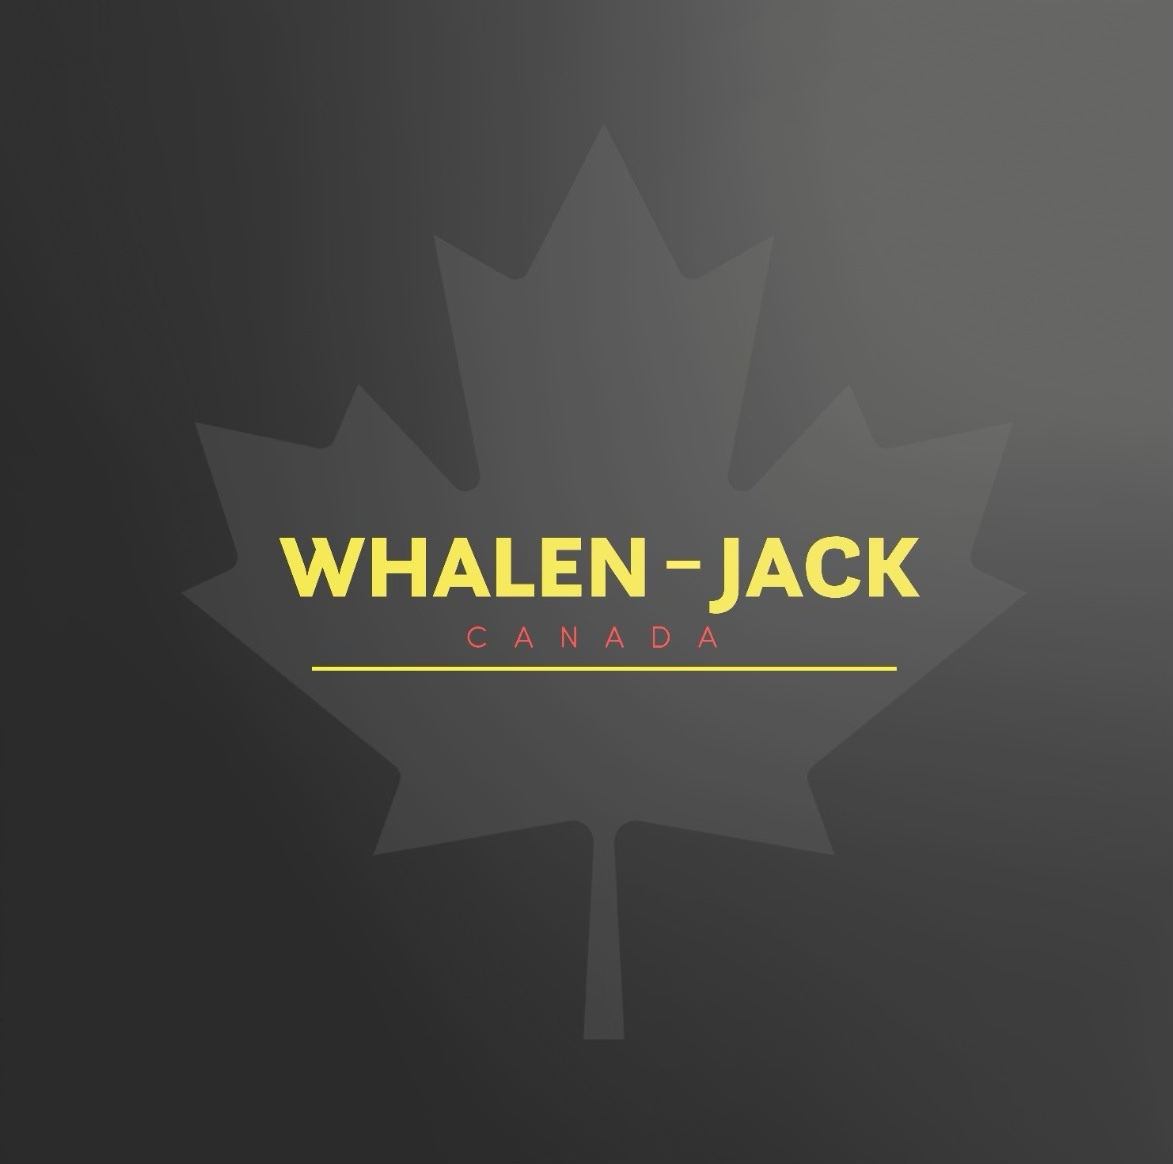 Whalen Jack Canada's logo